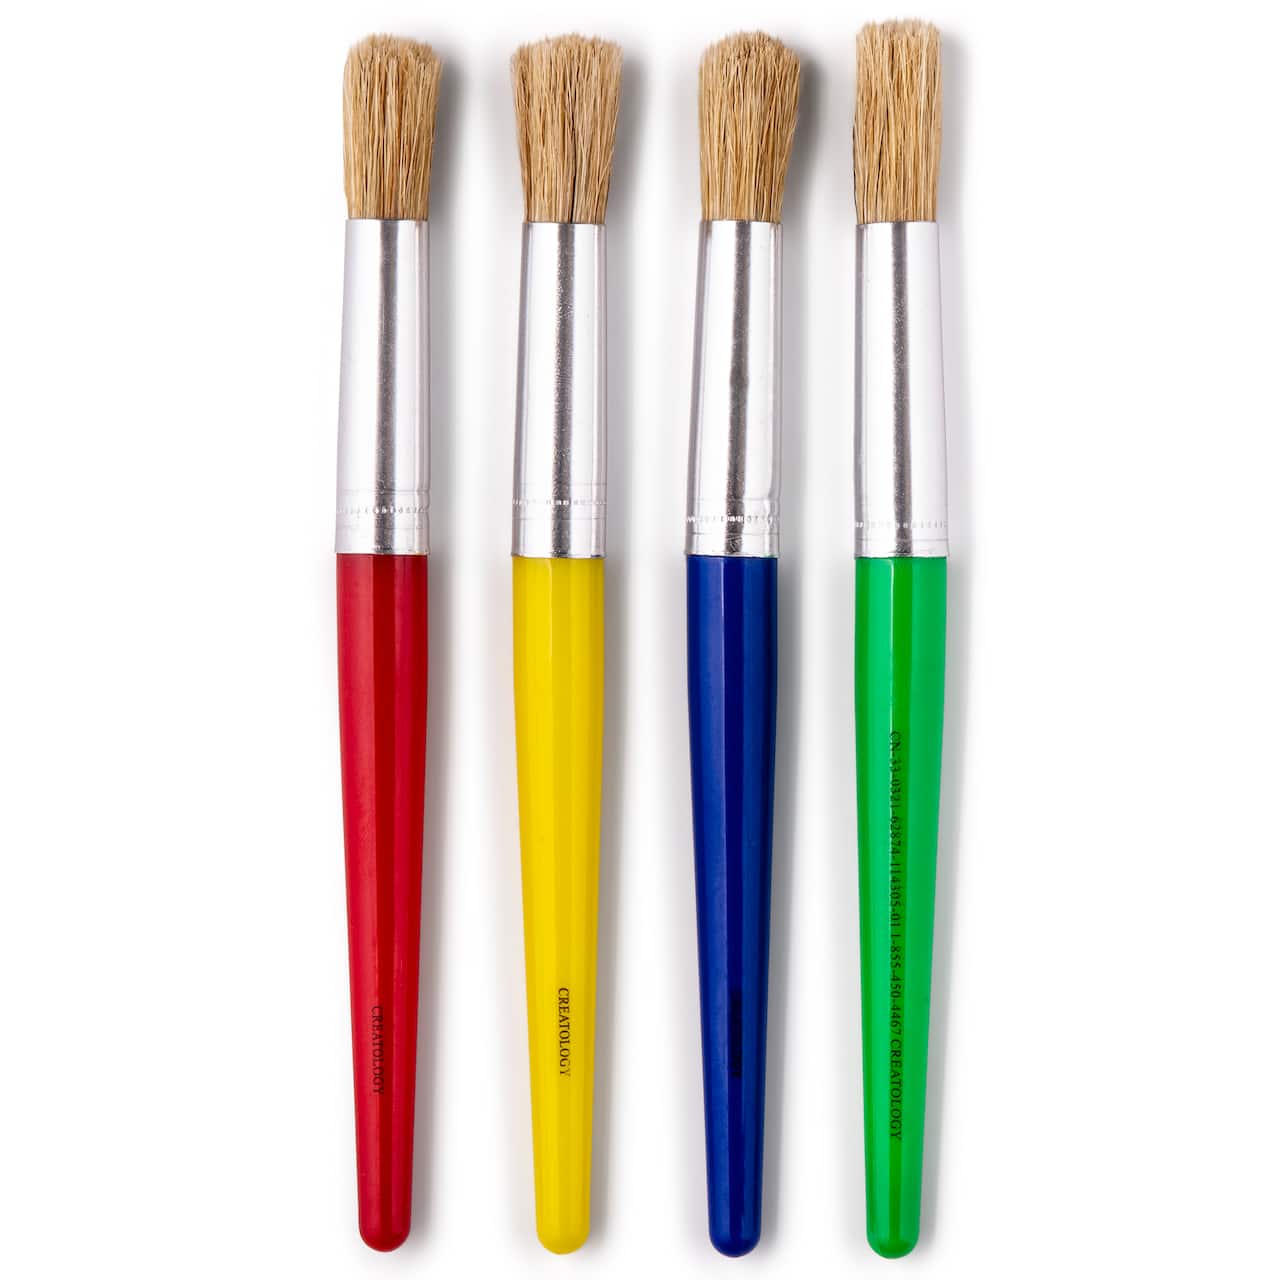 Jumbo Paint Brushes by Creatology®